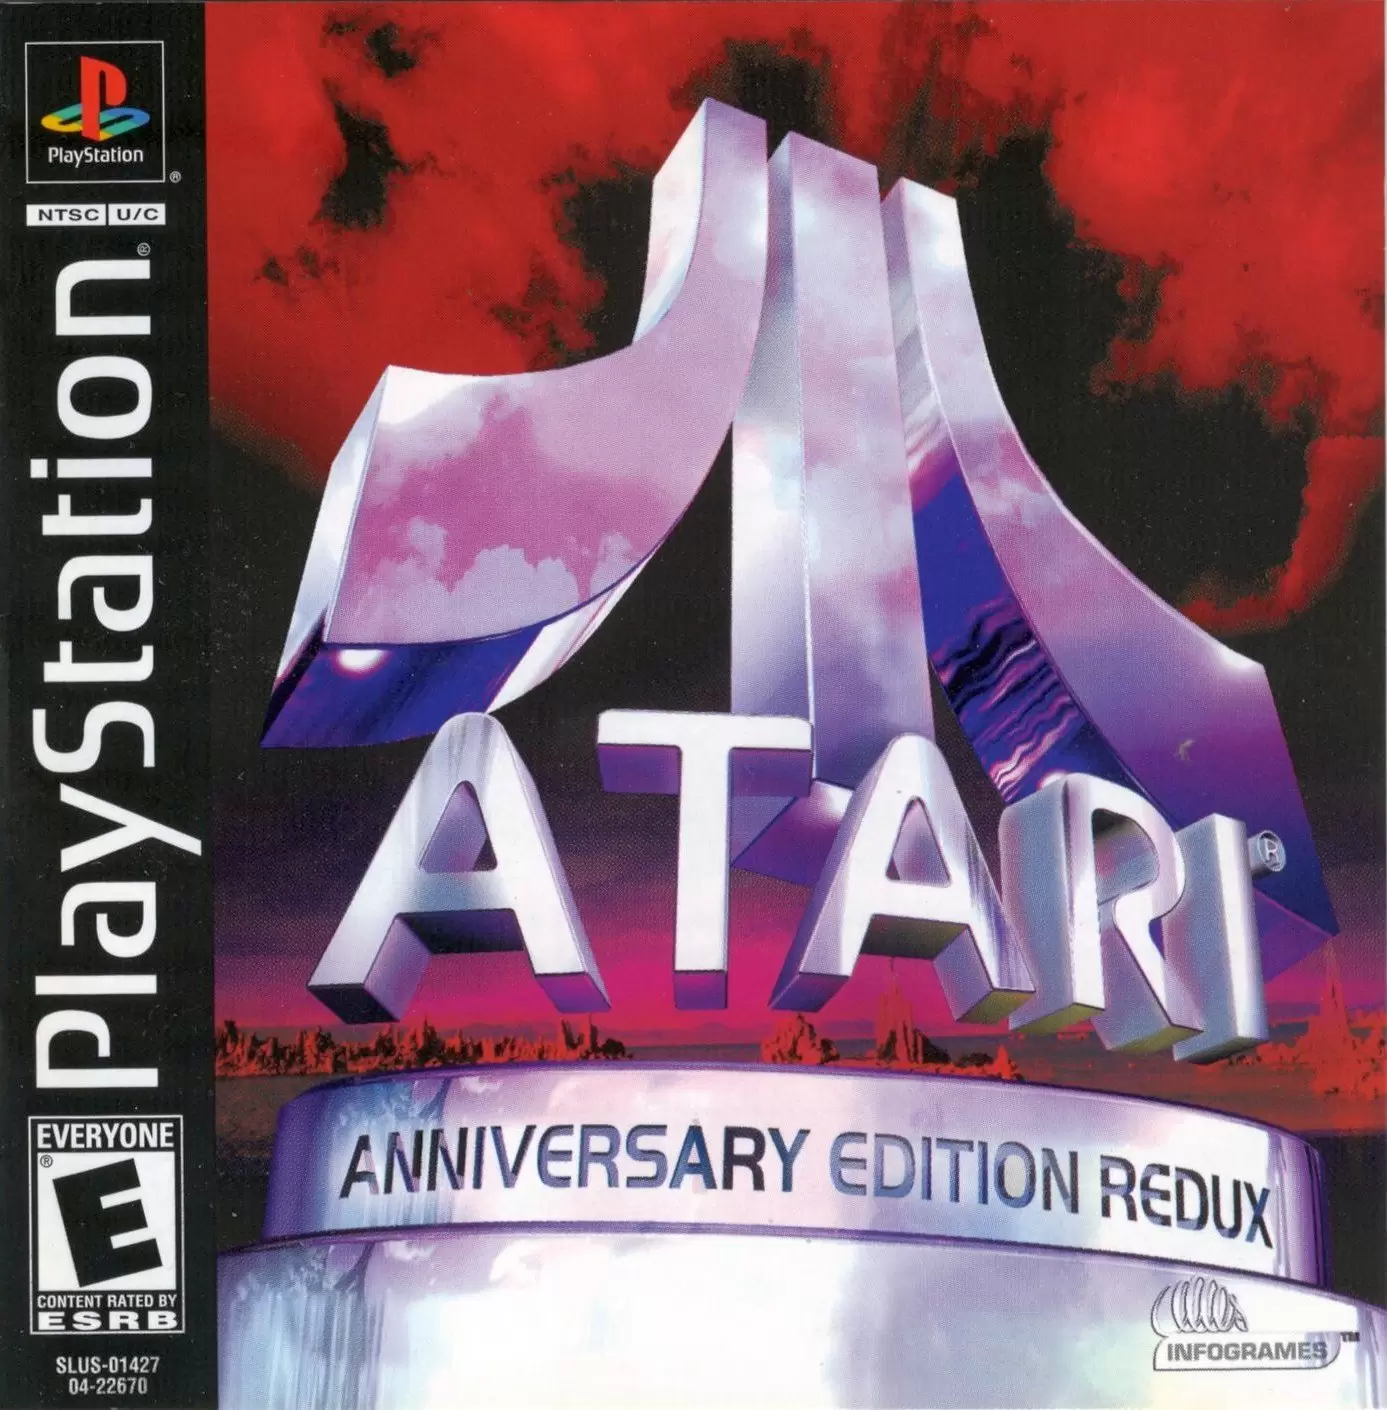 Playstation games - Atari Anniversary Edition Redux